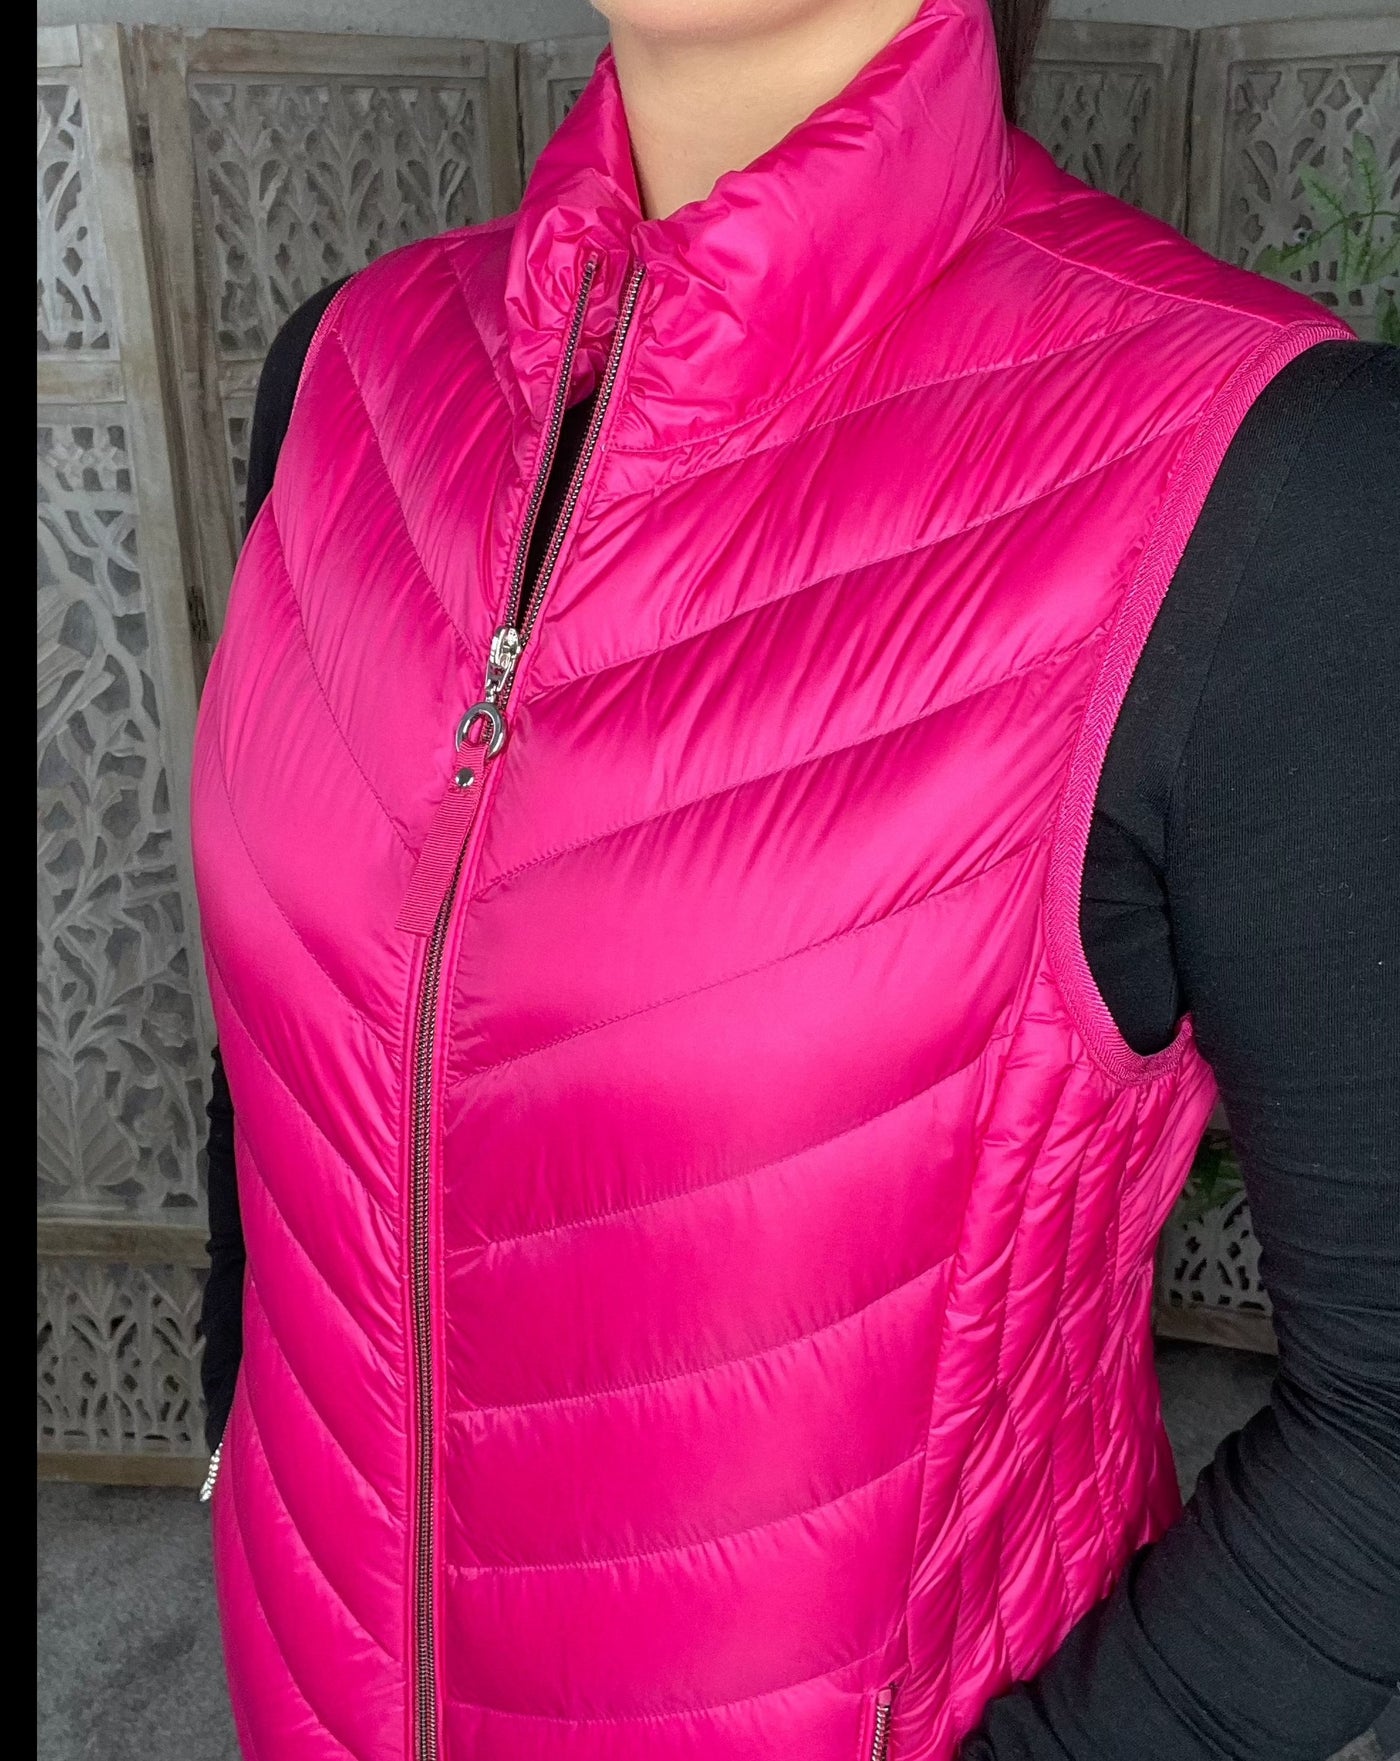 frandsen women's pink gilet waistcoat vest 